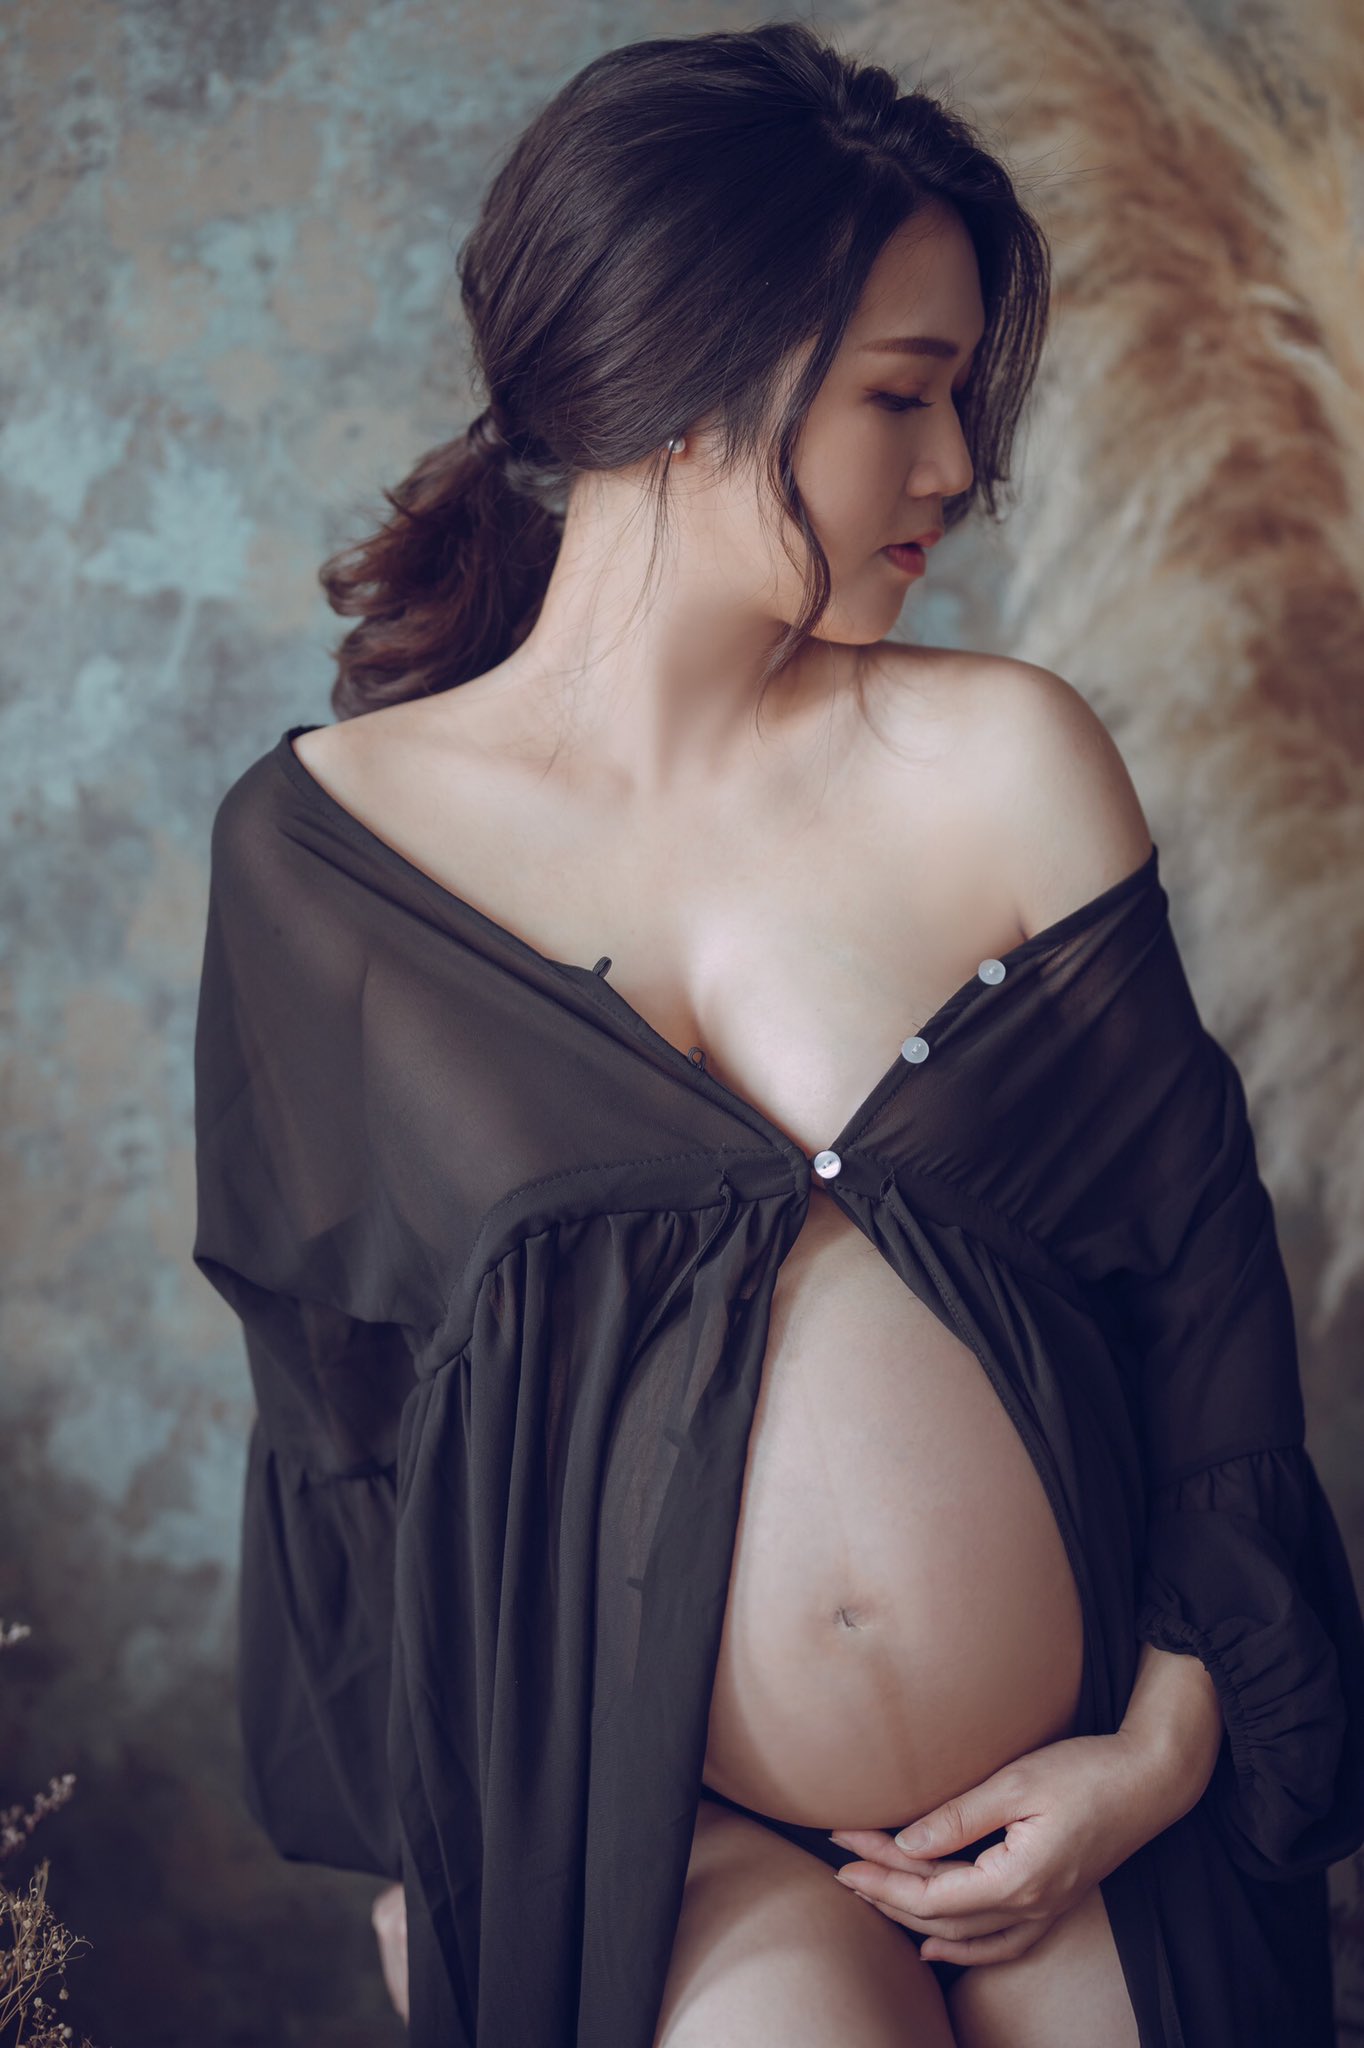 国产孕妇美图分享 纯美图不露点 042304